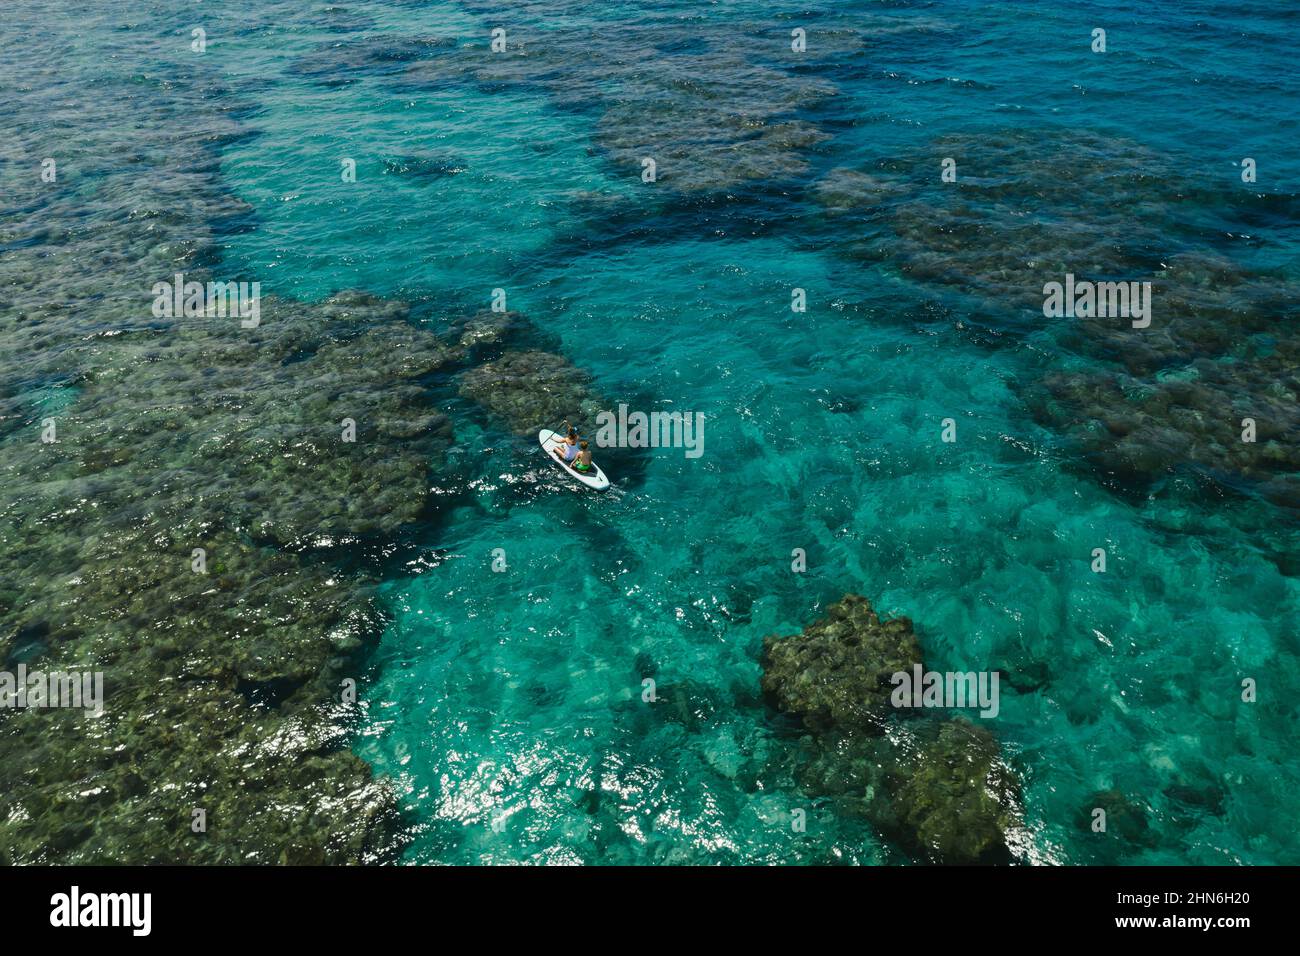 Se estancaría en Paddle Boarding sobre los arrecifes de coral en el Mar de China Oriental Foto de stock